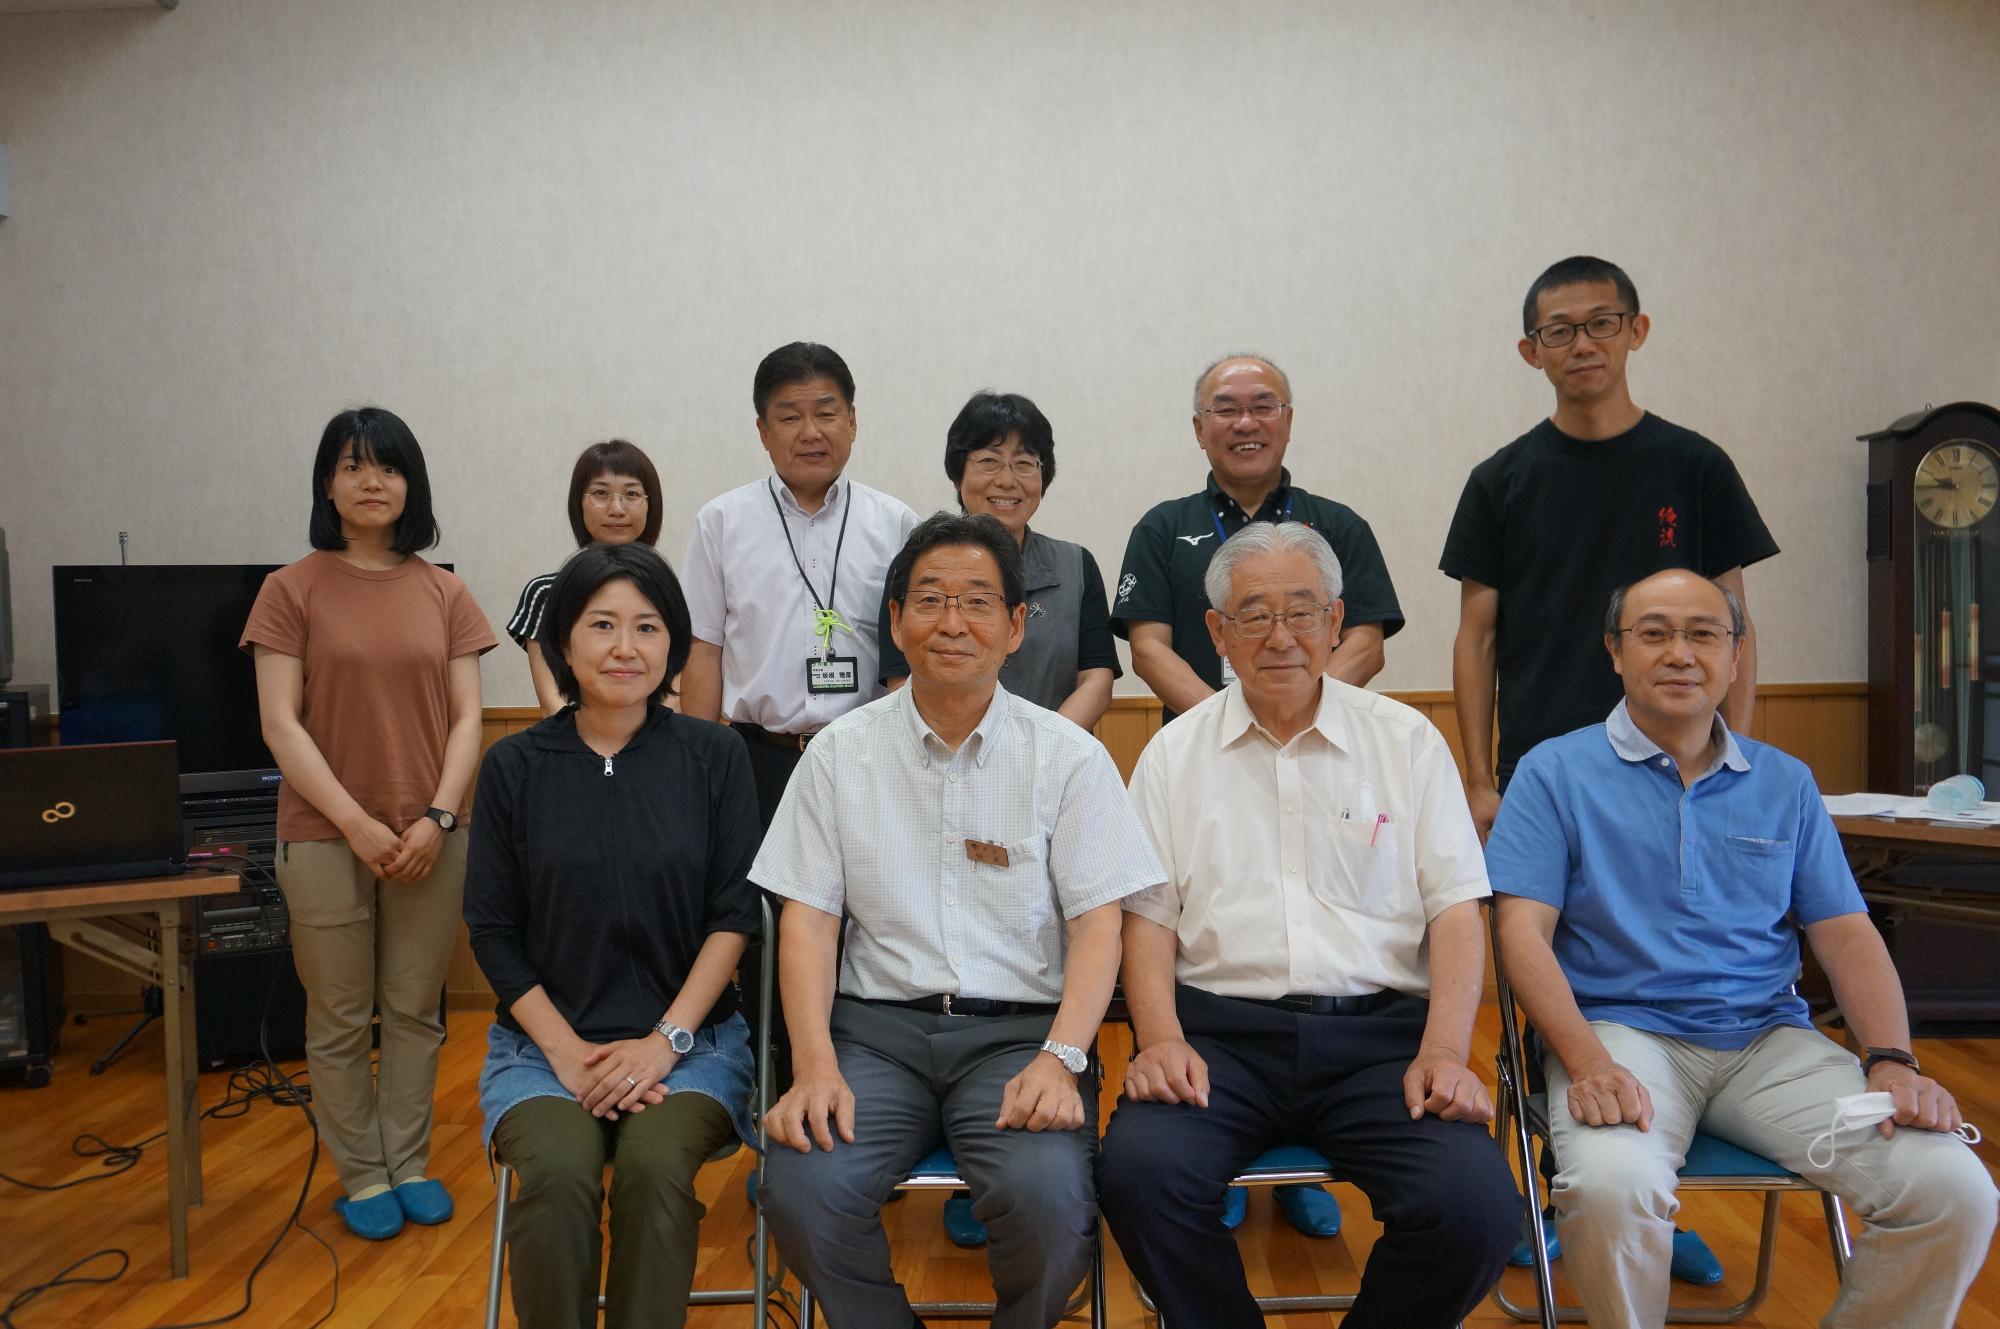 前列の左から、西村いつき先生、福元市長、保田茂先生が並んでいる写真